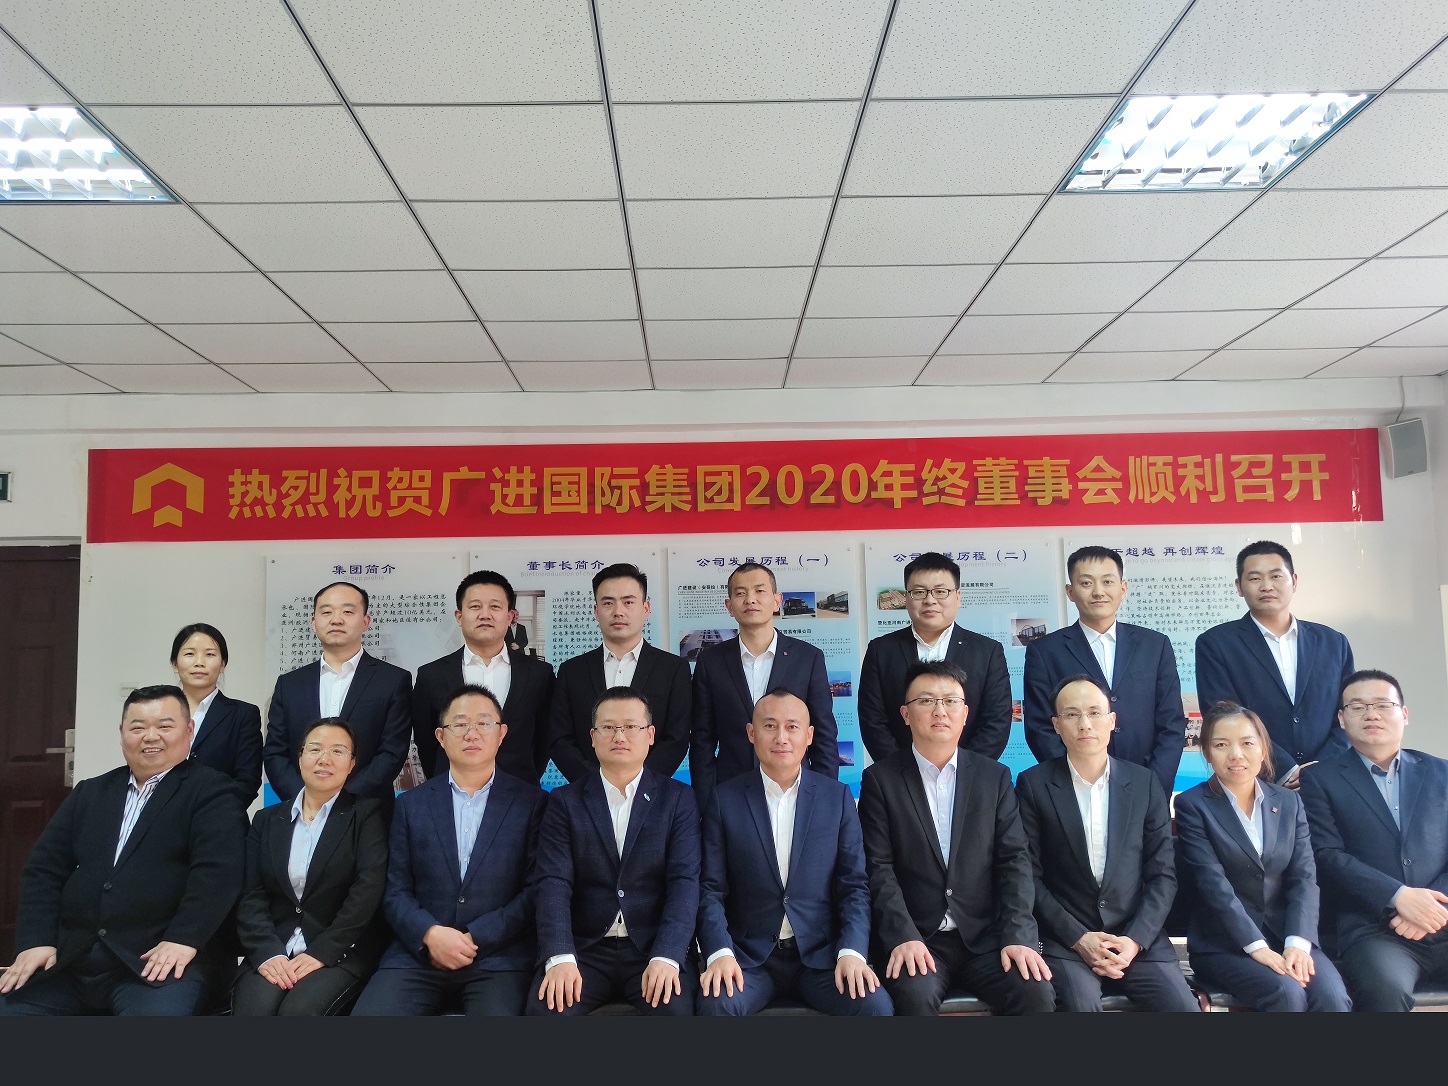 Guangjin International Group's 2020 Board of Directors